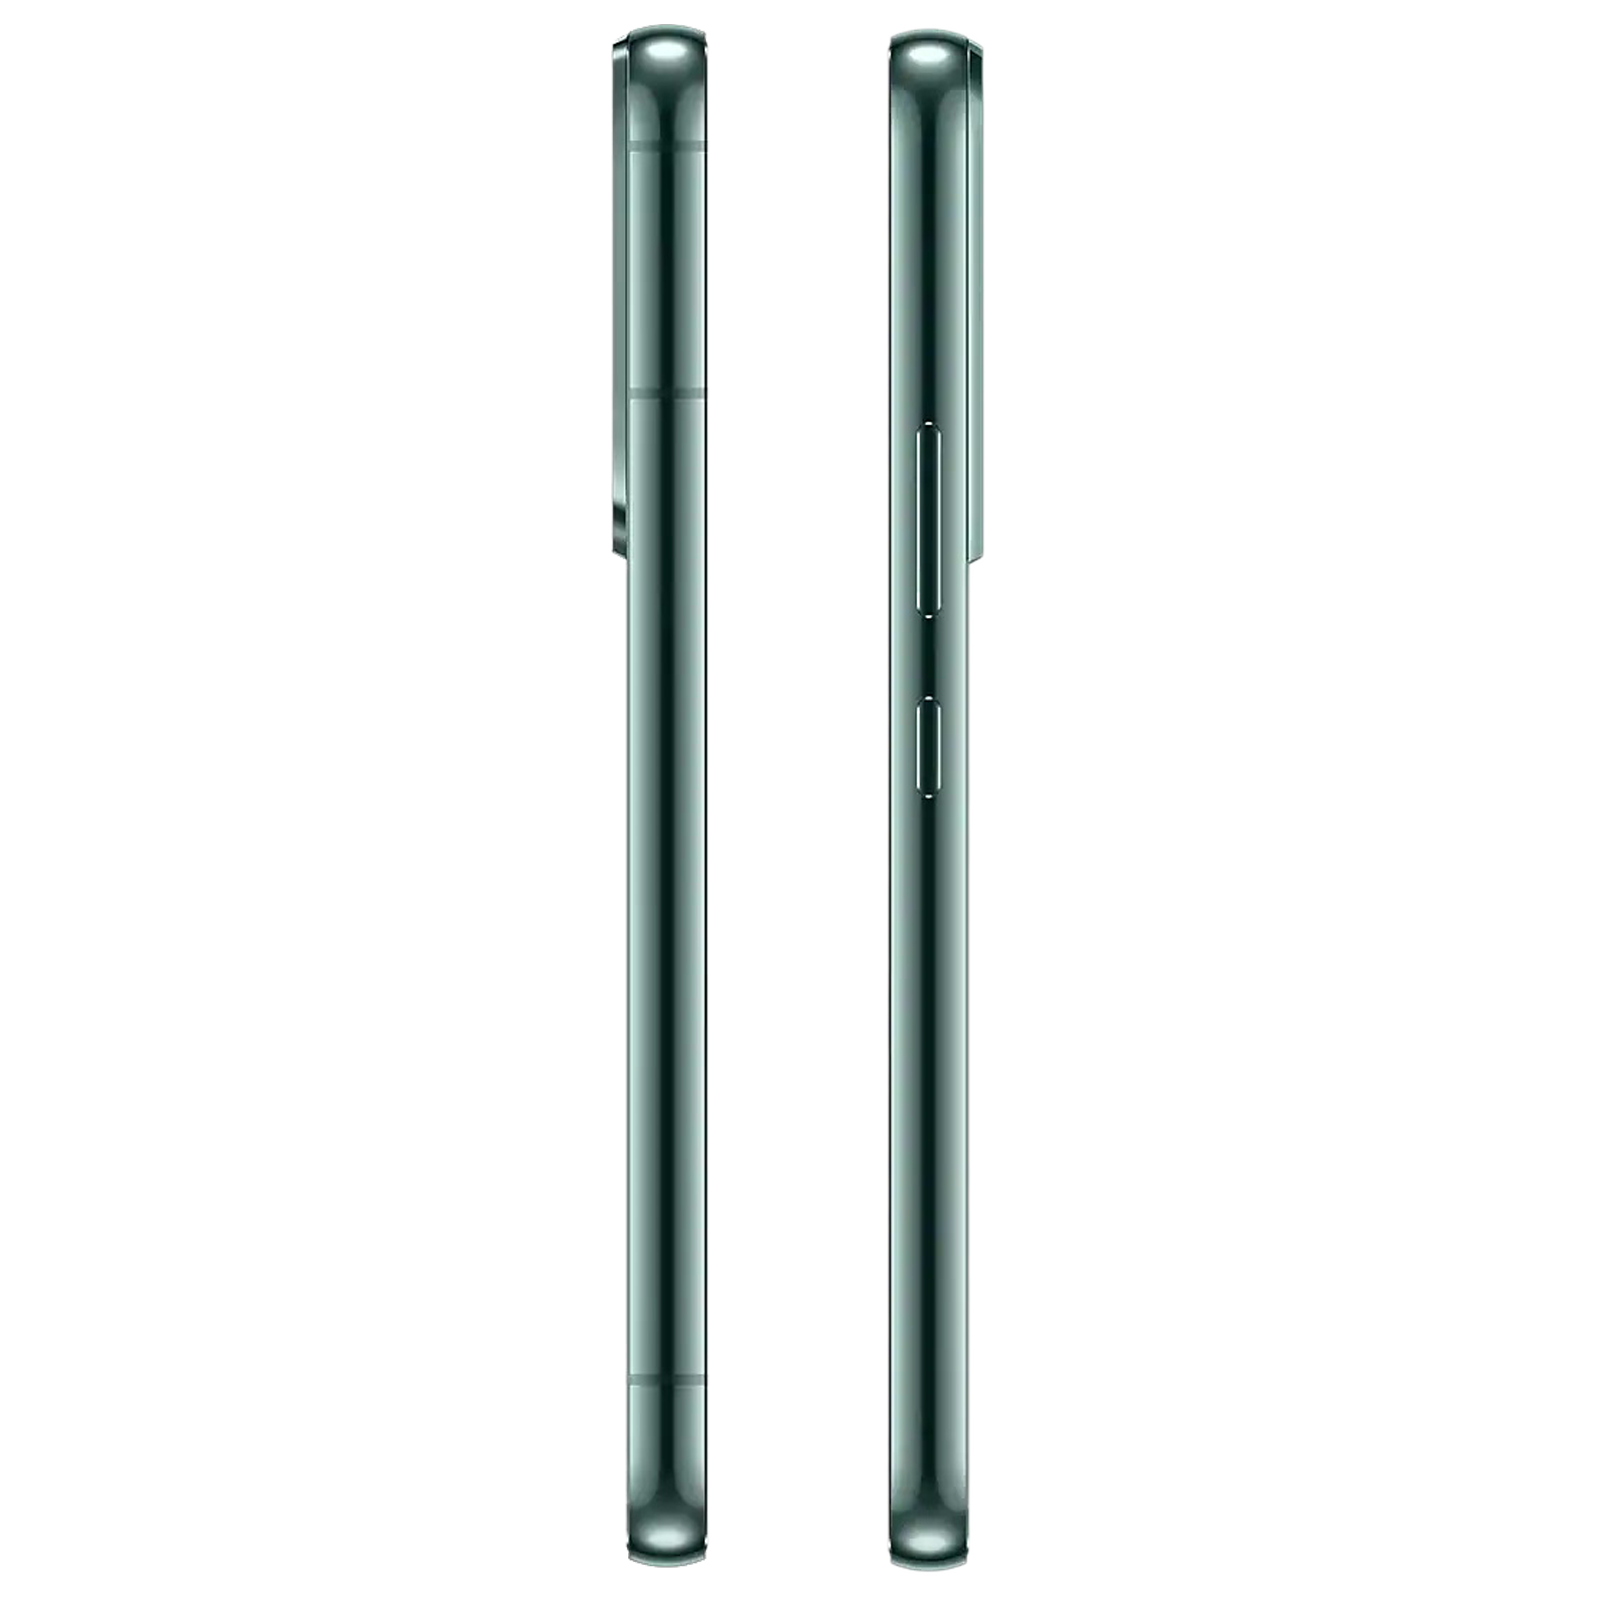 SAMSUNG Galaxy S22 5G (Green, 128 GB) (8 GB RAM)